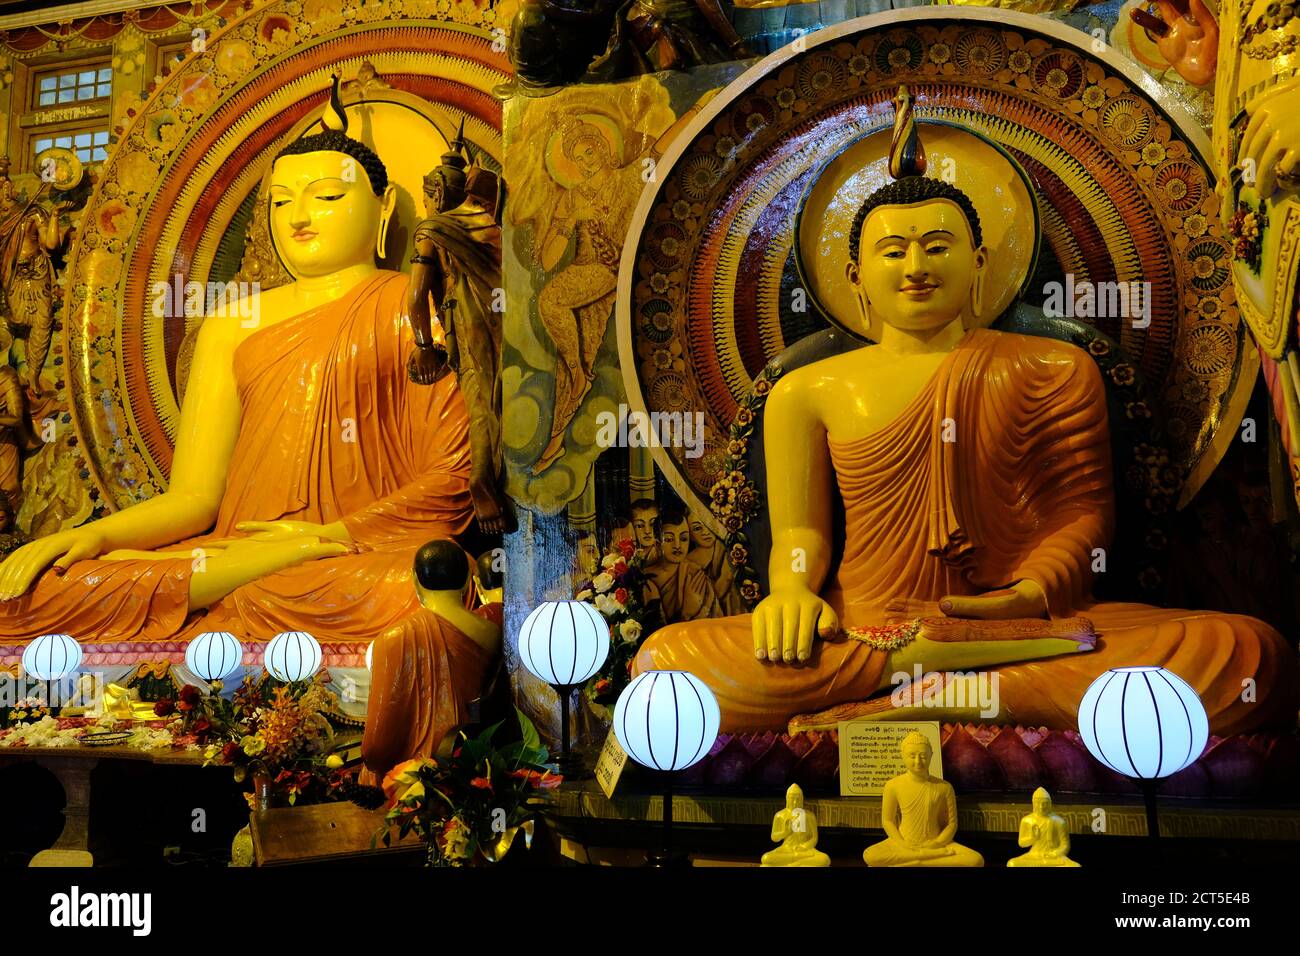 Sri Lanka Colombo - Old Buddhist temple Gangaramaya Buddha statues Stock Photo